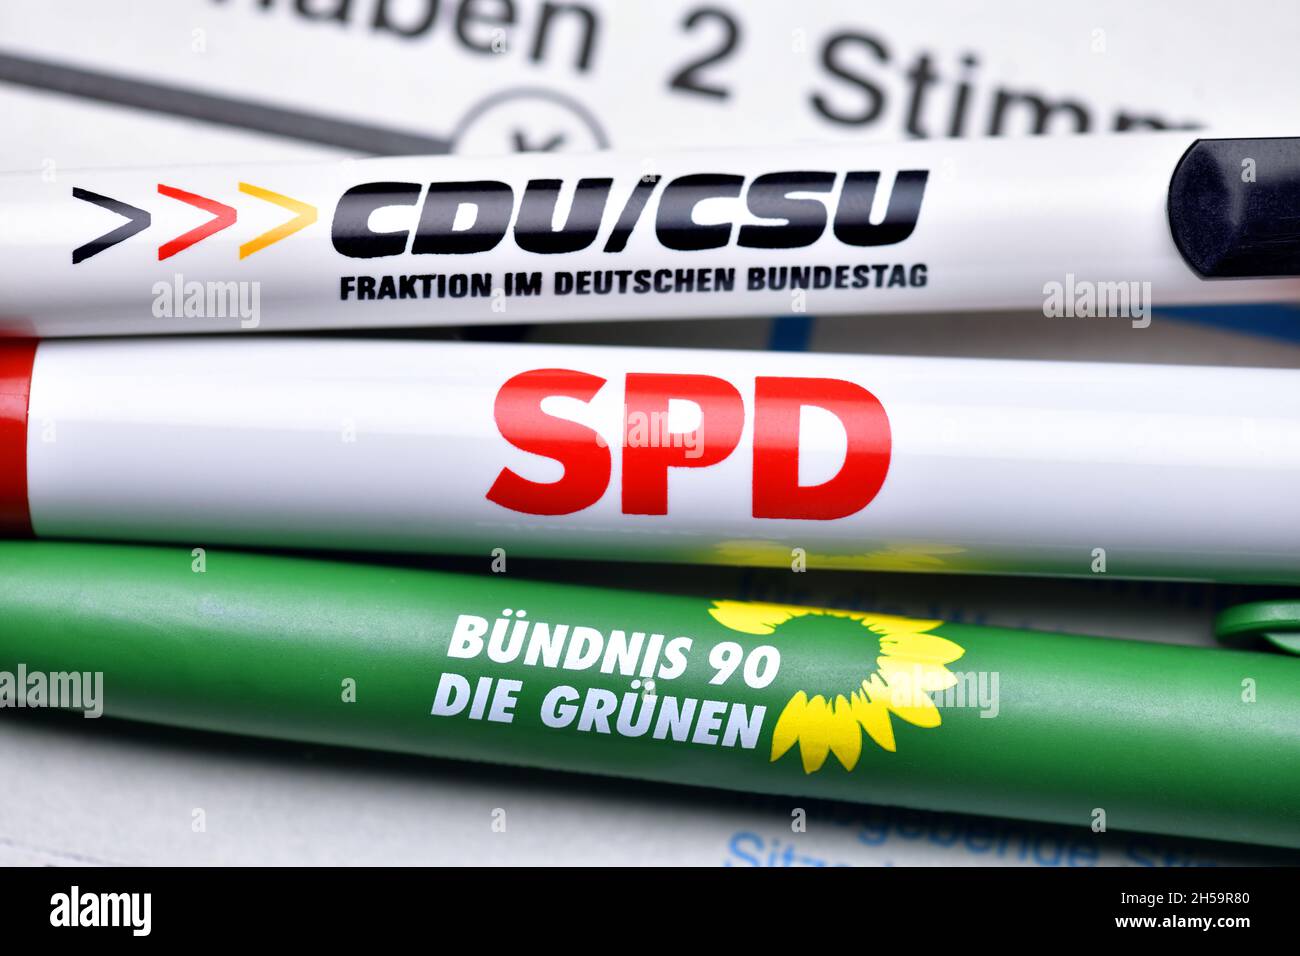 Parteien-Kugelschreiber auf einem Stimmzettel, Koalition aus CDU/CSU, SPD  und den Grünen, Kenia-Koalition Stock Photo - Alamy